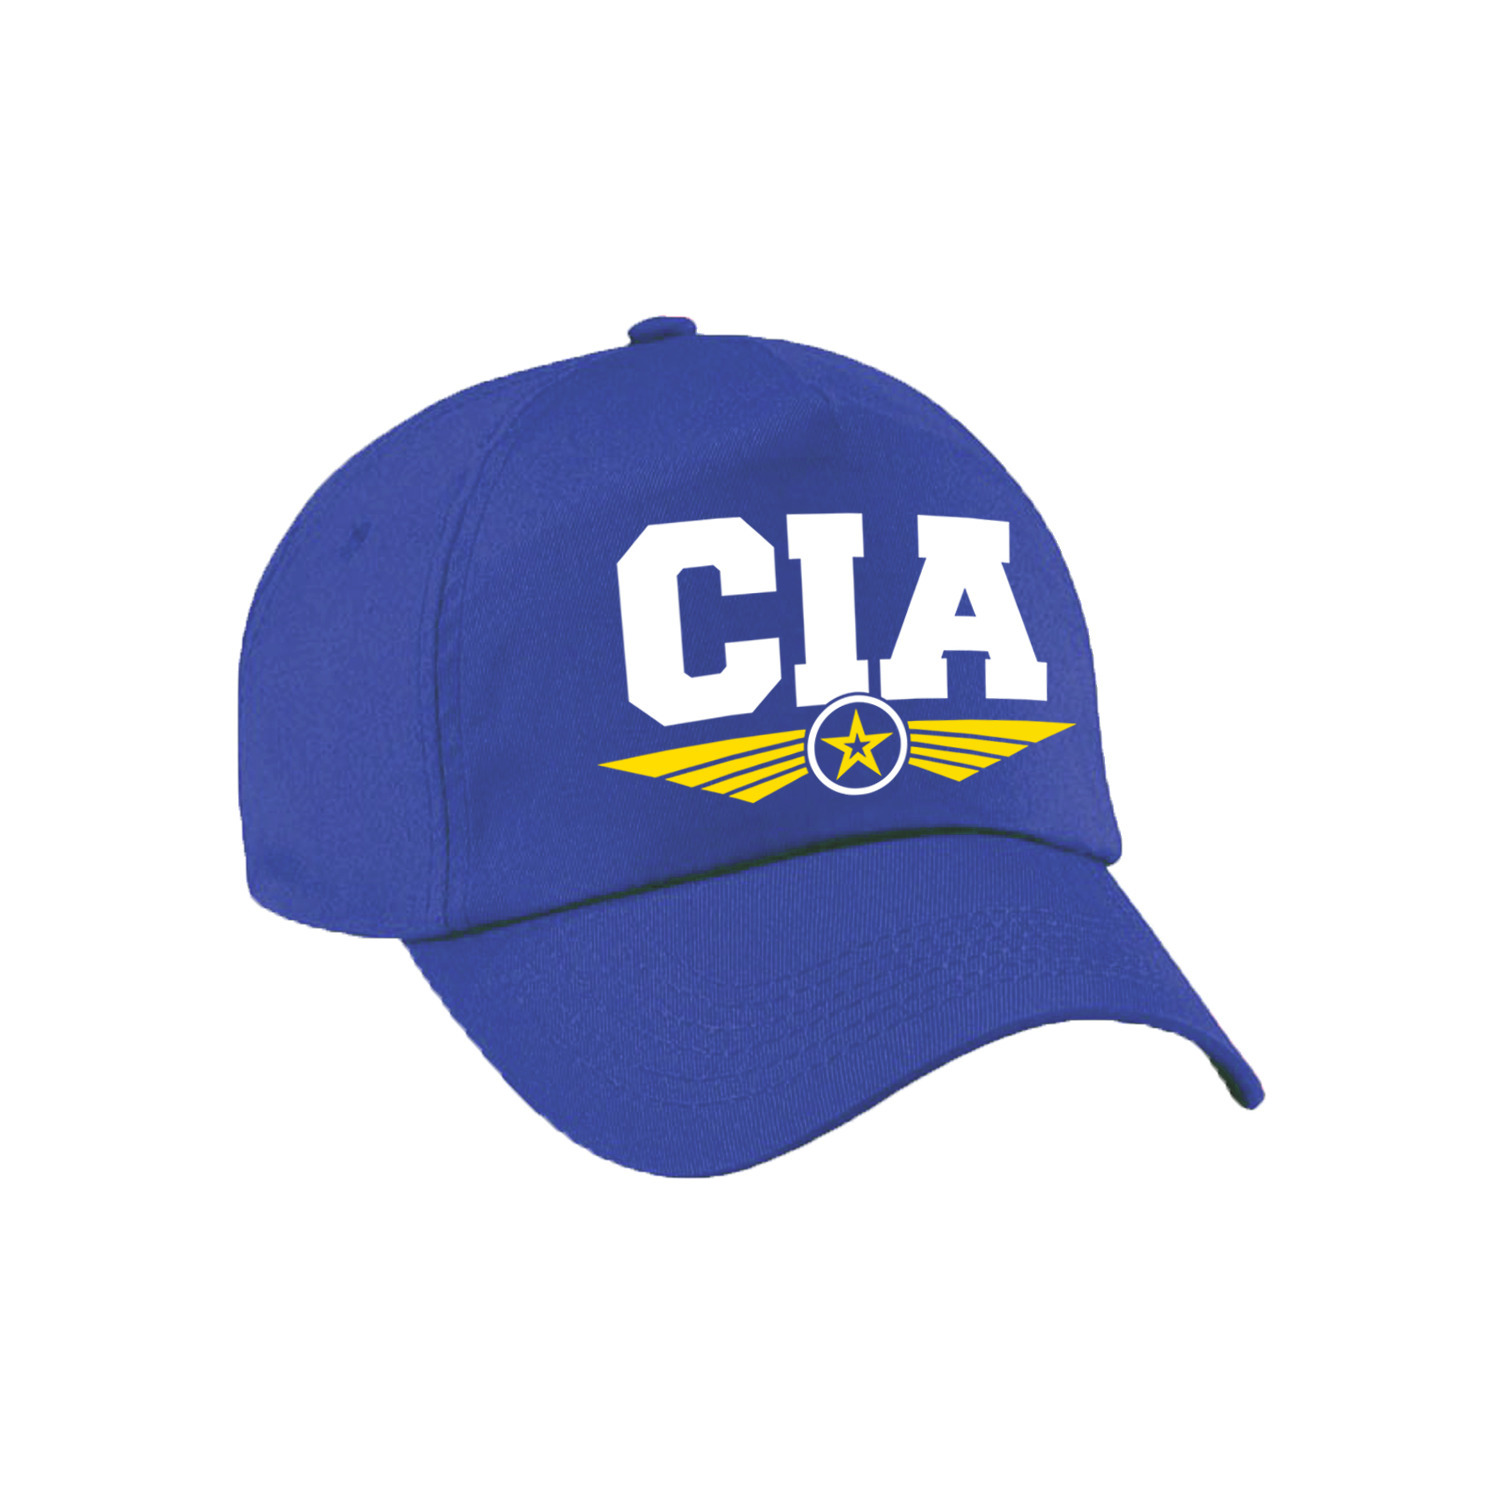 CIA agent tekst pet - baseball cap blauw voor kinderen